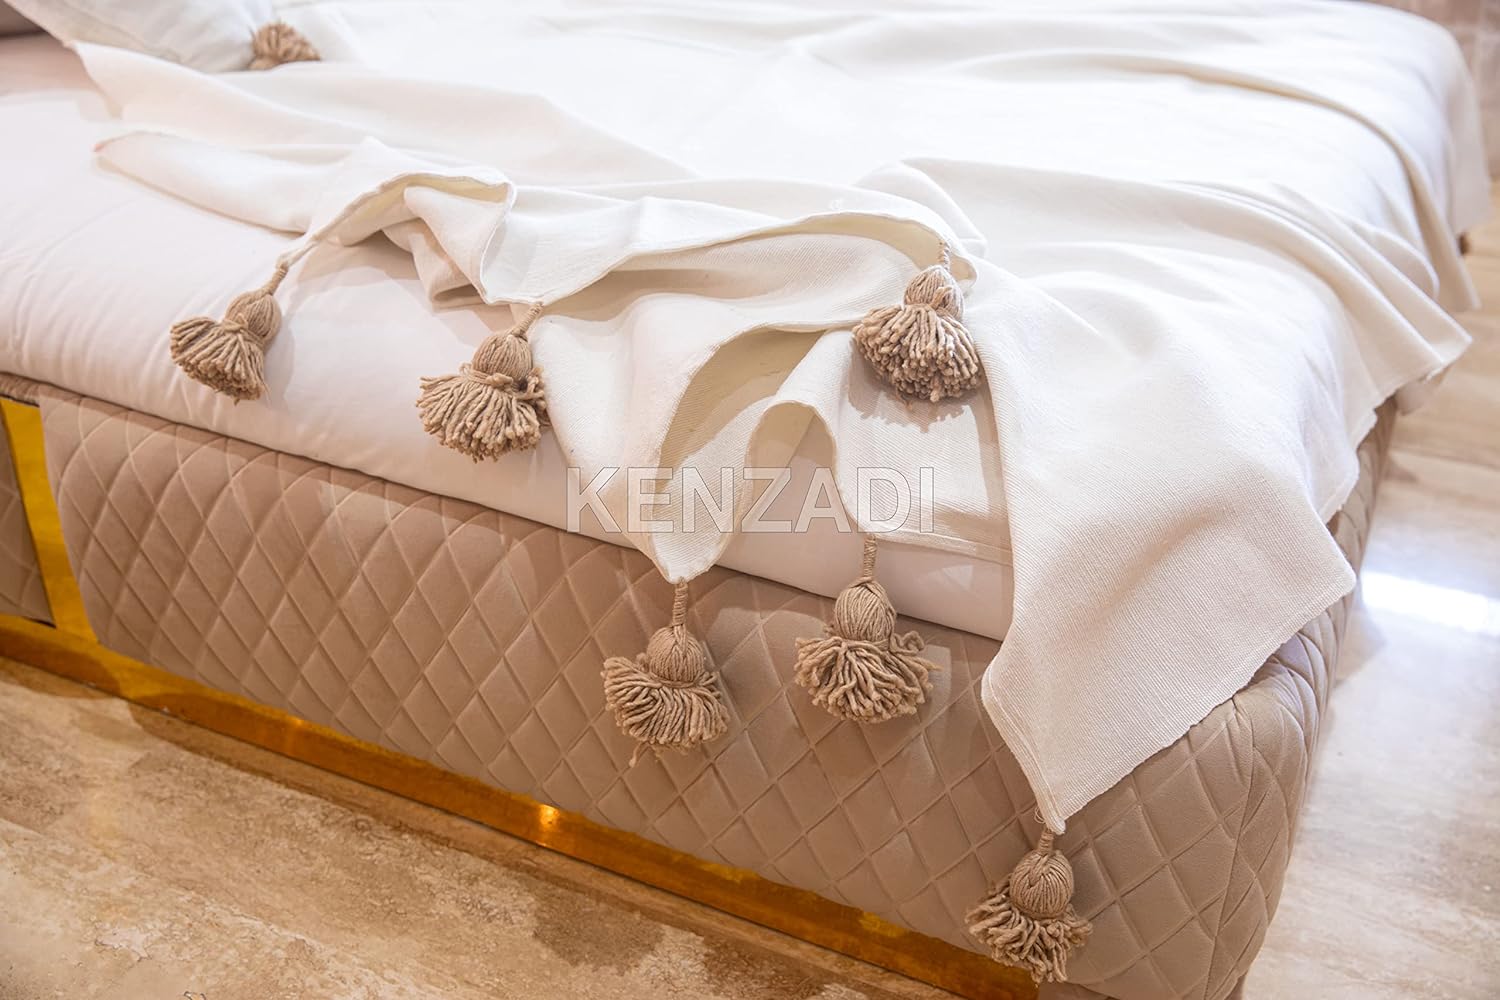 KENZADI Moroccan Handmade Pompom Blanket, Throw Blanket, Pom Pom Blanket, Boho Blanket, Bed Cover, Warm Blanket, Cozy Blanket (White with pom Brown, King (U.S. Standard)) - Handmade by My Poufs